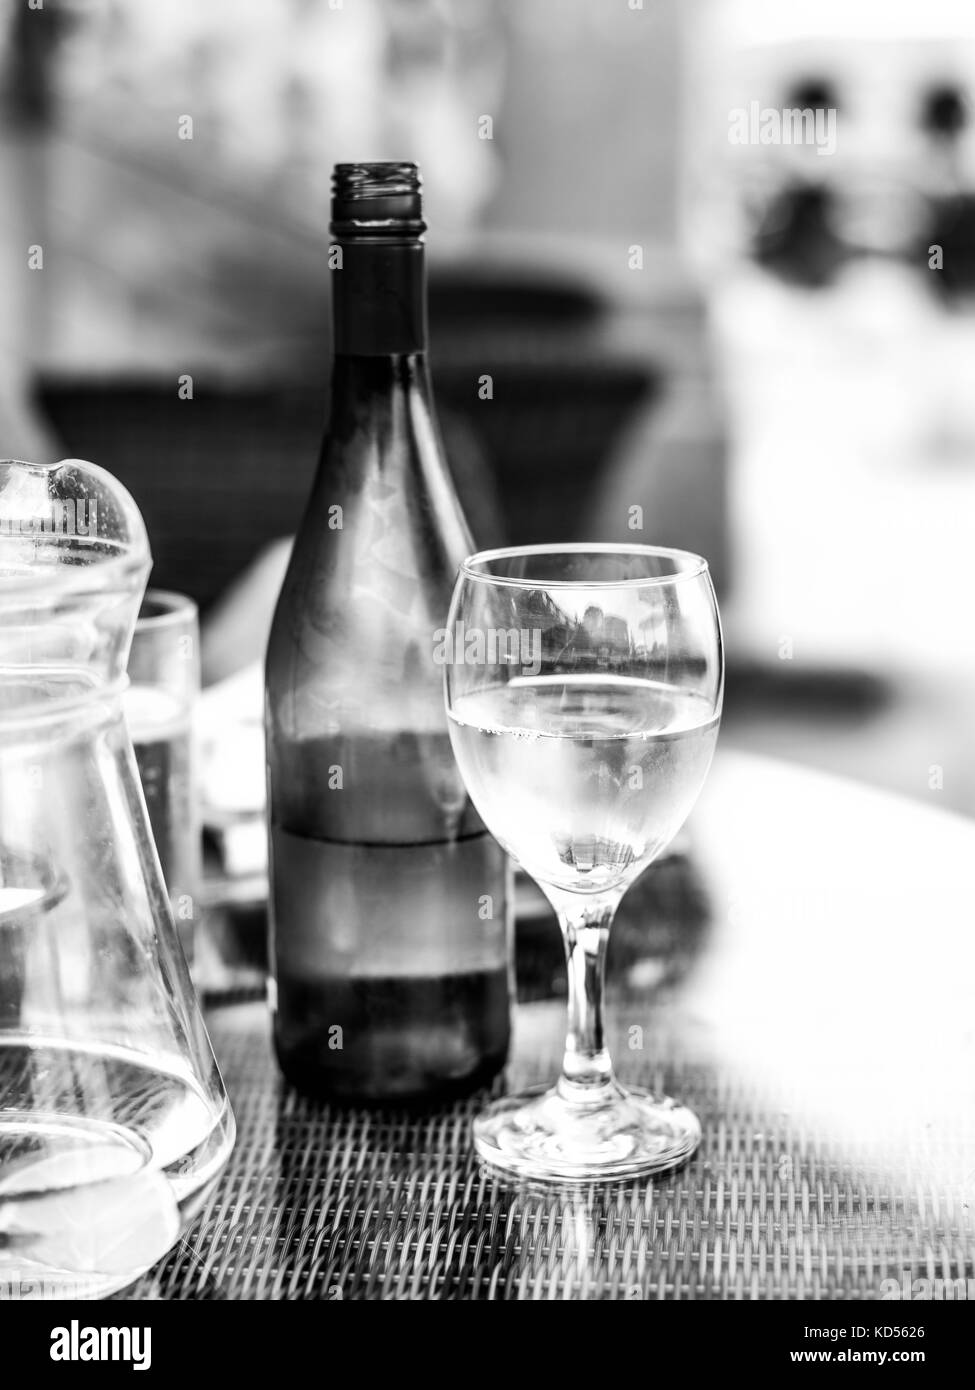 Schwarze und weiße monochrome Bild aus einem Glas Weißwein Weiter, um eine geöffnete Flasche Wein auf einem Tisch mit einem Krug Wasser Stockfoto